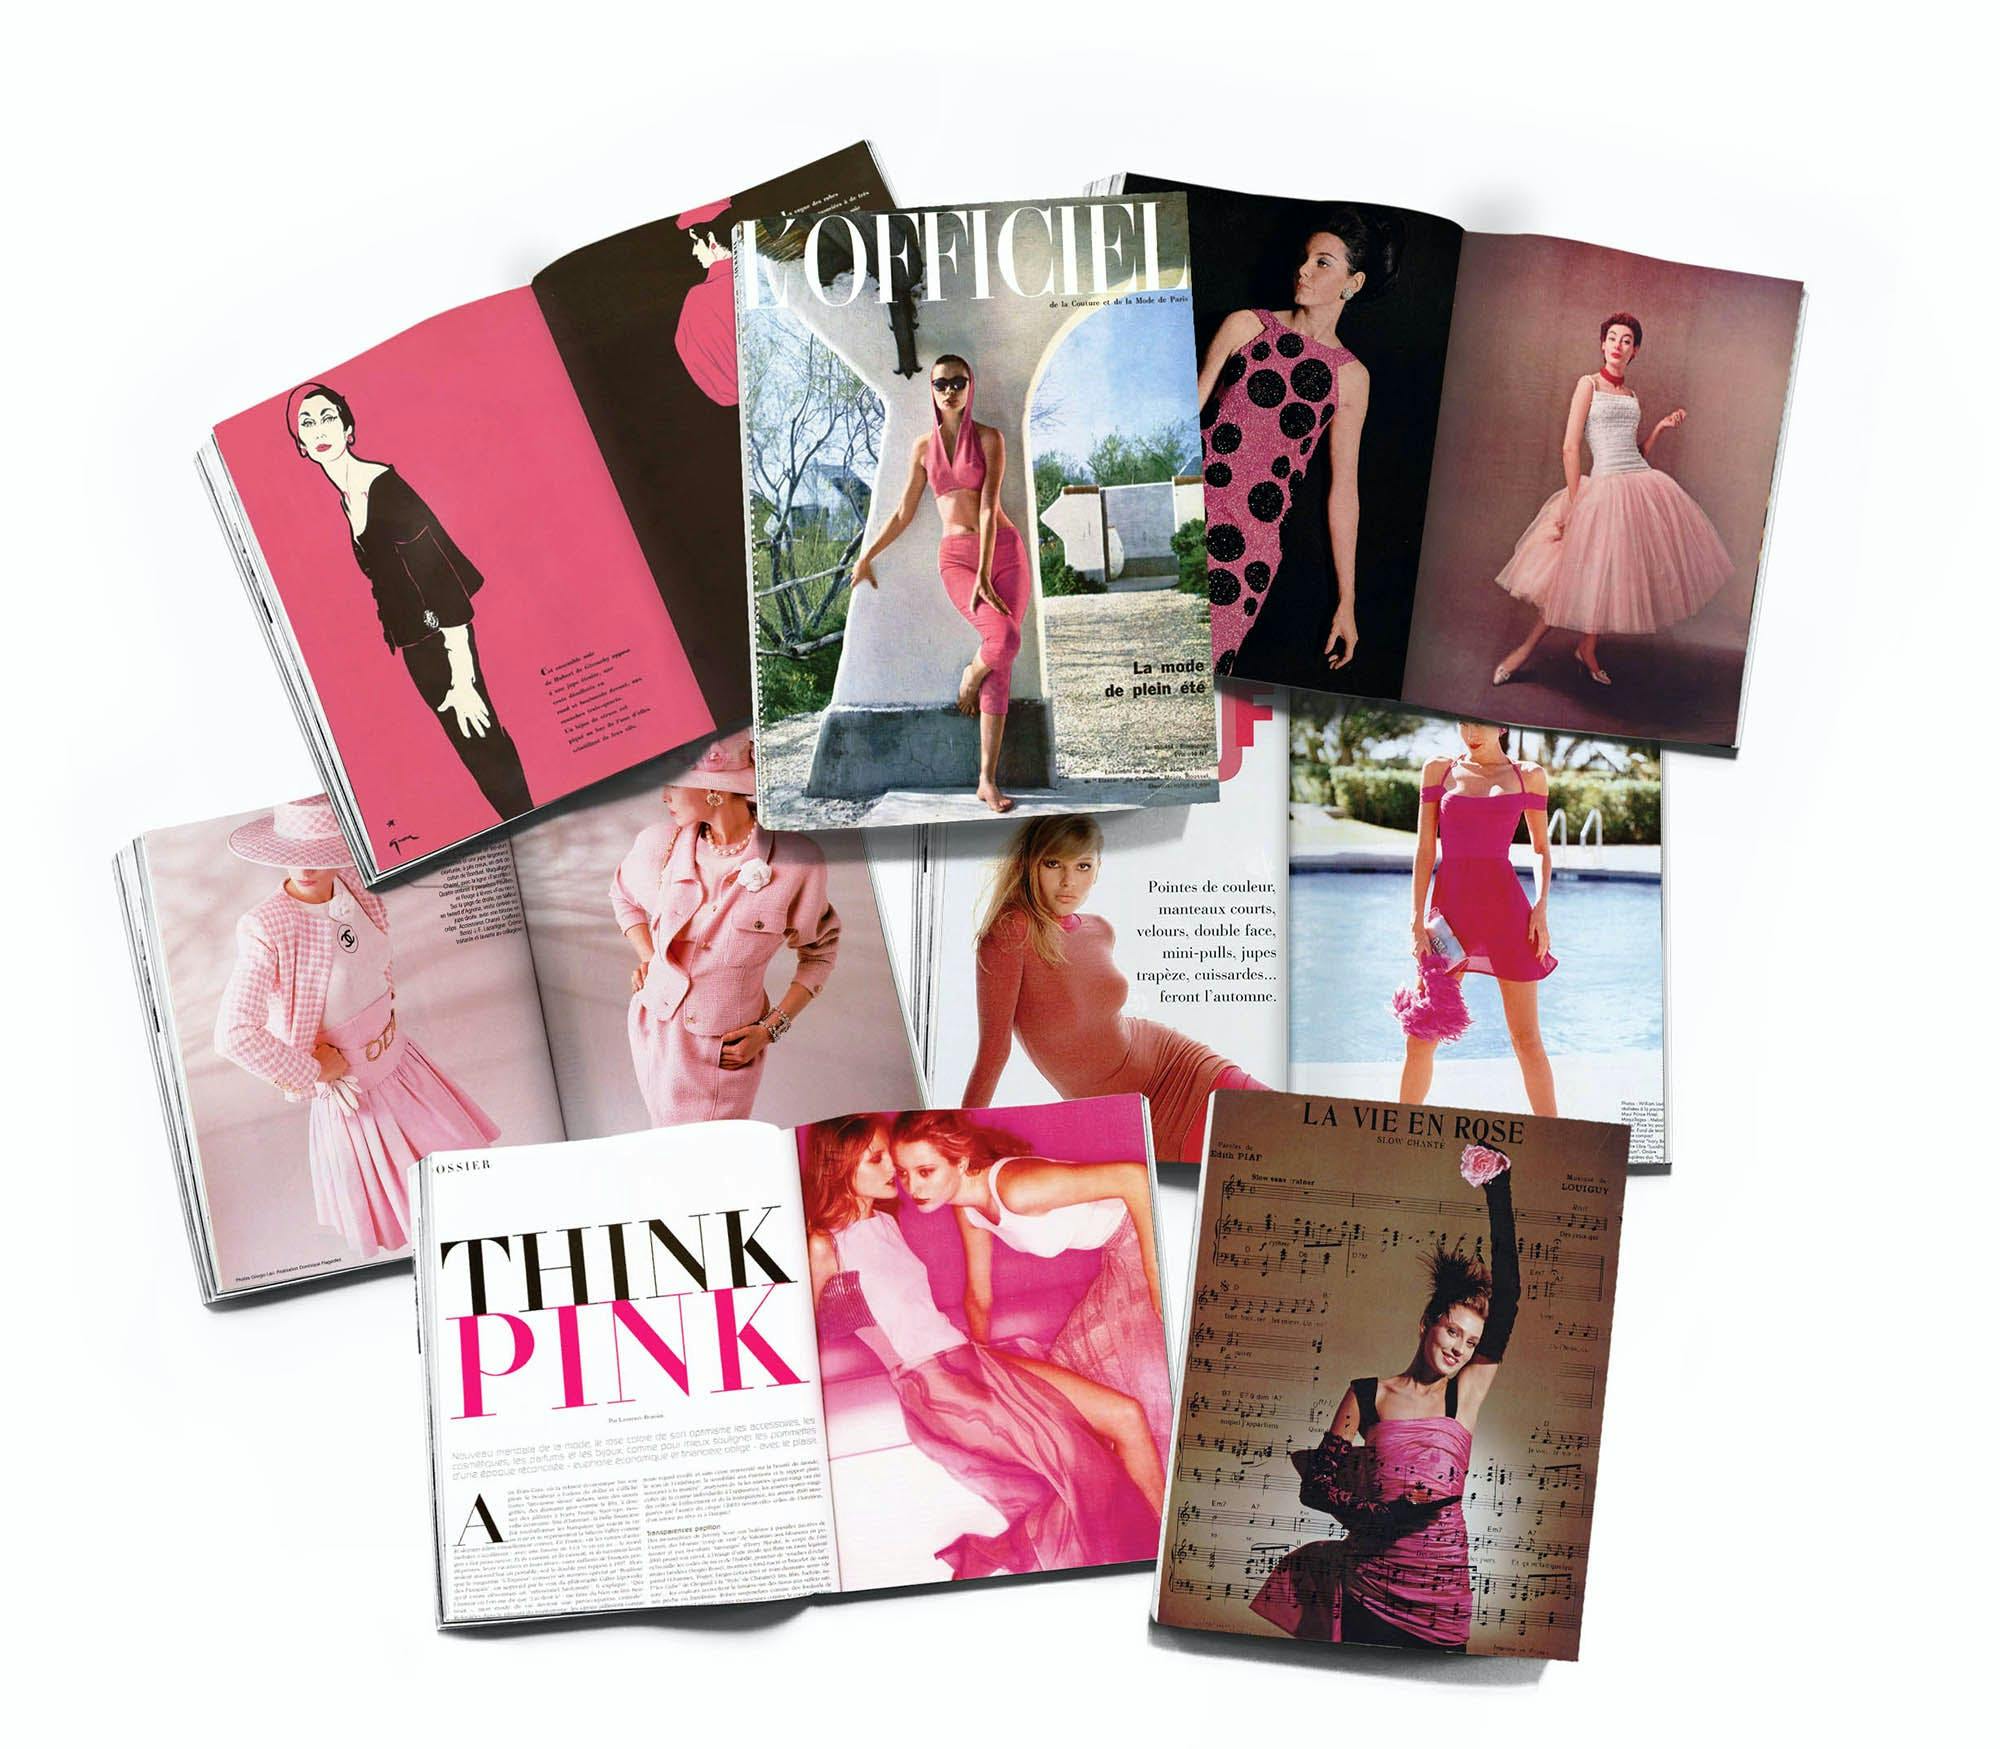 Barbiecore magazine collage